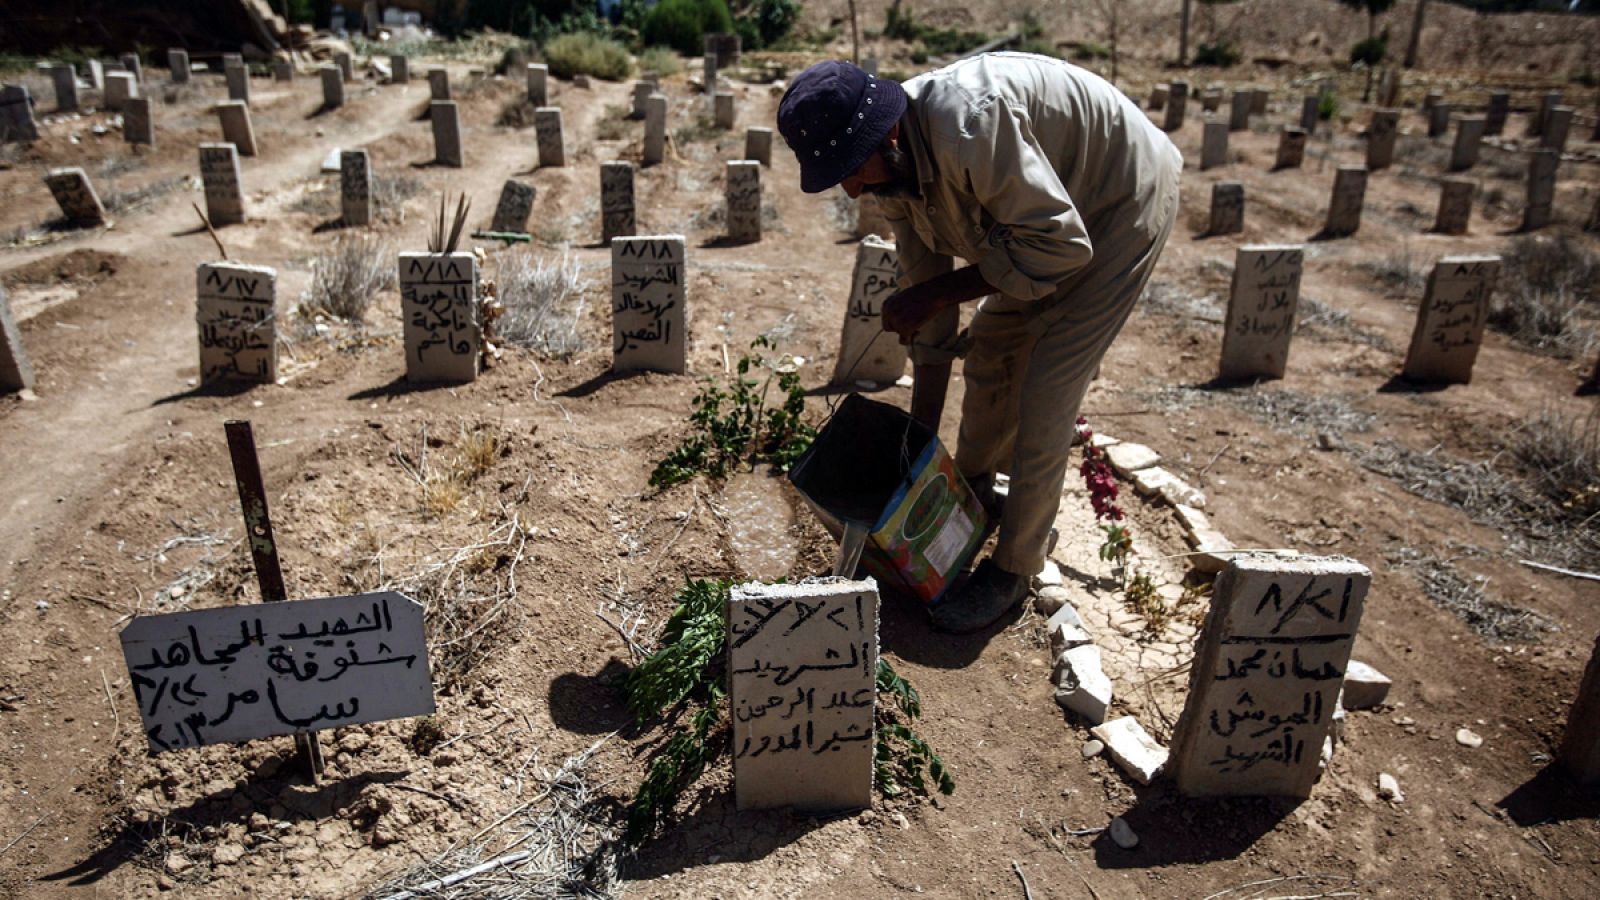 Fotografía de un hombre regando las flores depositadas en las tumbas de las víctimas del ataque químico en la localidad de Guta, en Siria, del pasado 21 de agosto de 2013 en el tercer aniversario de la masacre.